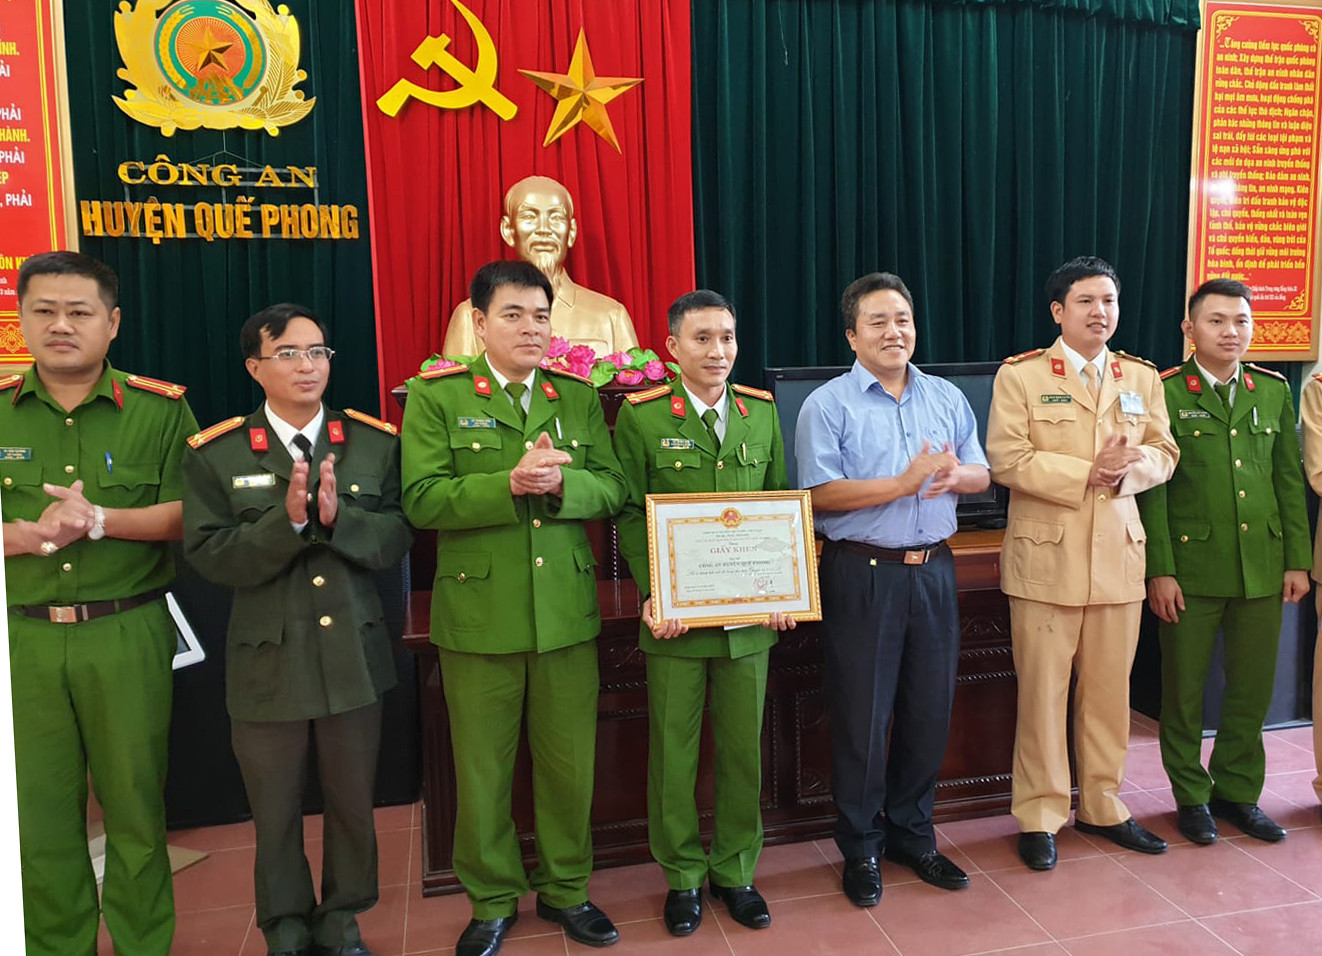 Ông Lê Văn Giáp – Chủ tịch UBND huyện Quế Phong khen thưởng cho Ban chuyên án. Ảnh: Đình Đức